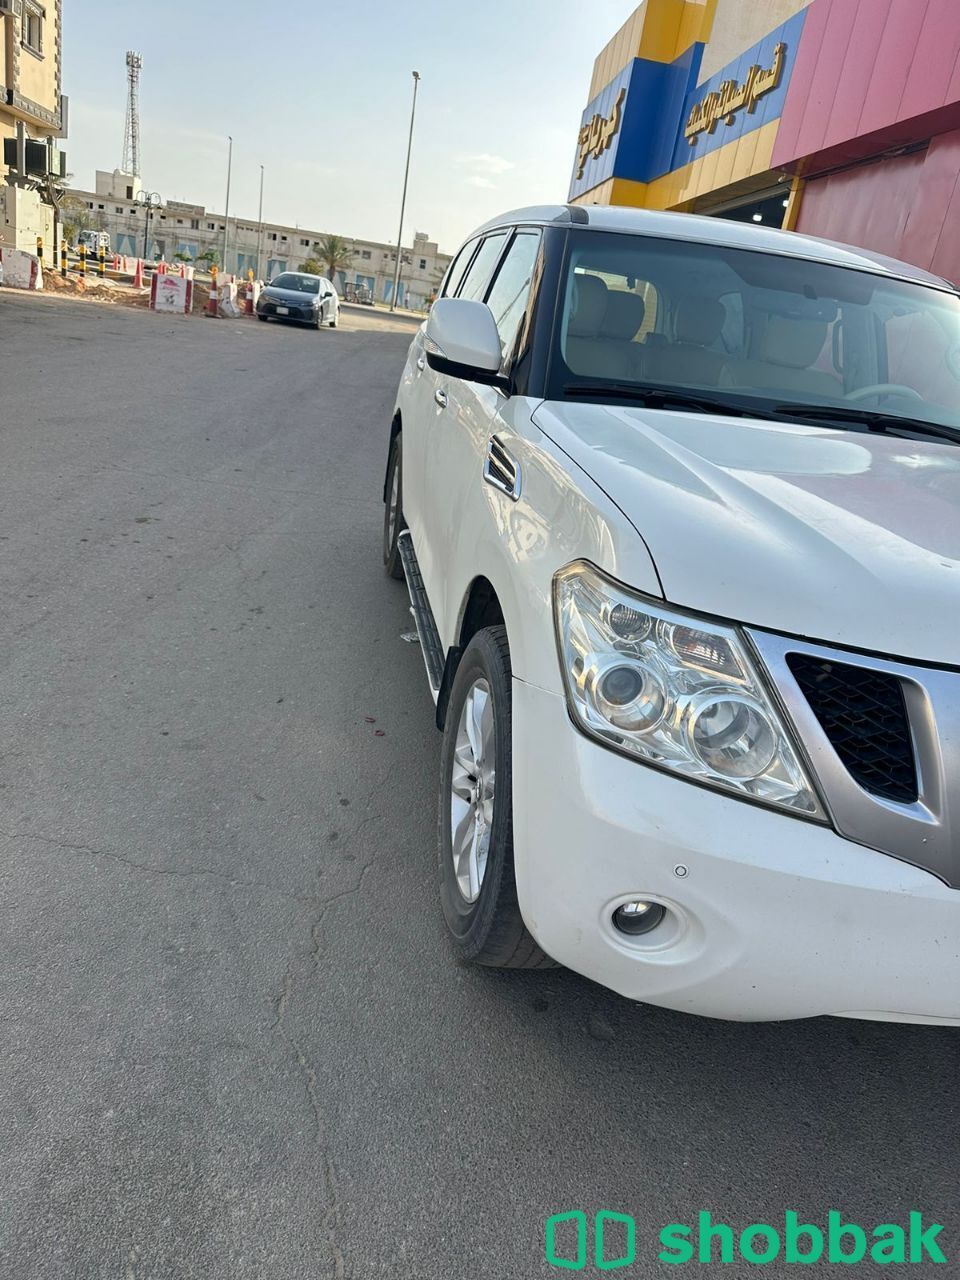 تخليص الفحص الفني الدوري لجميع انواع السيارات  Shobbak Saudi Arabia